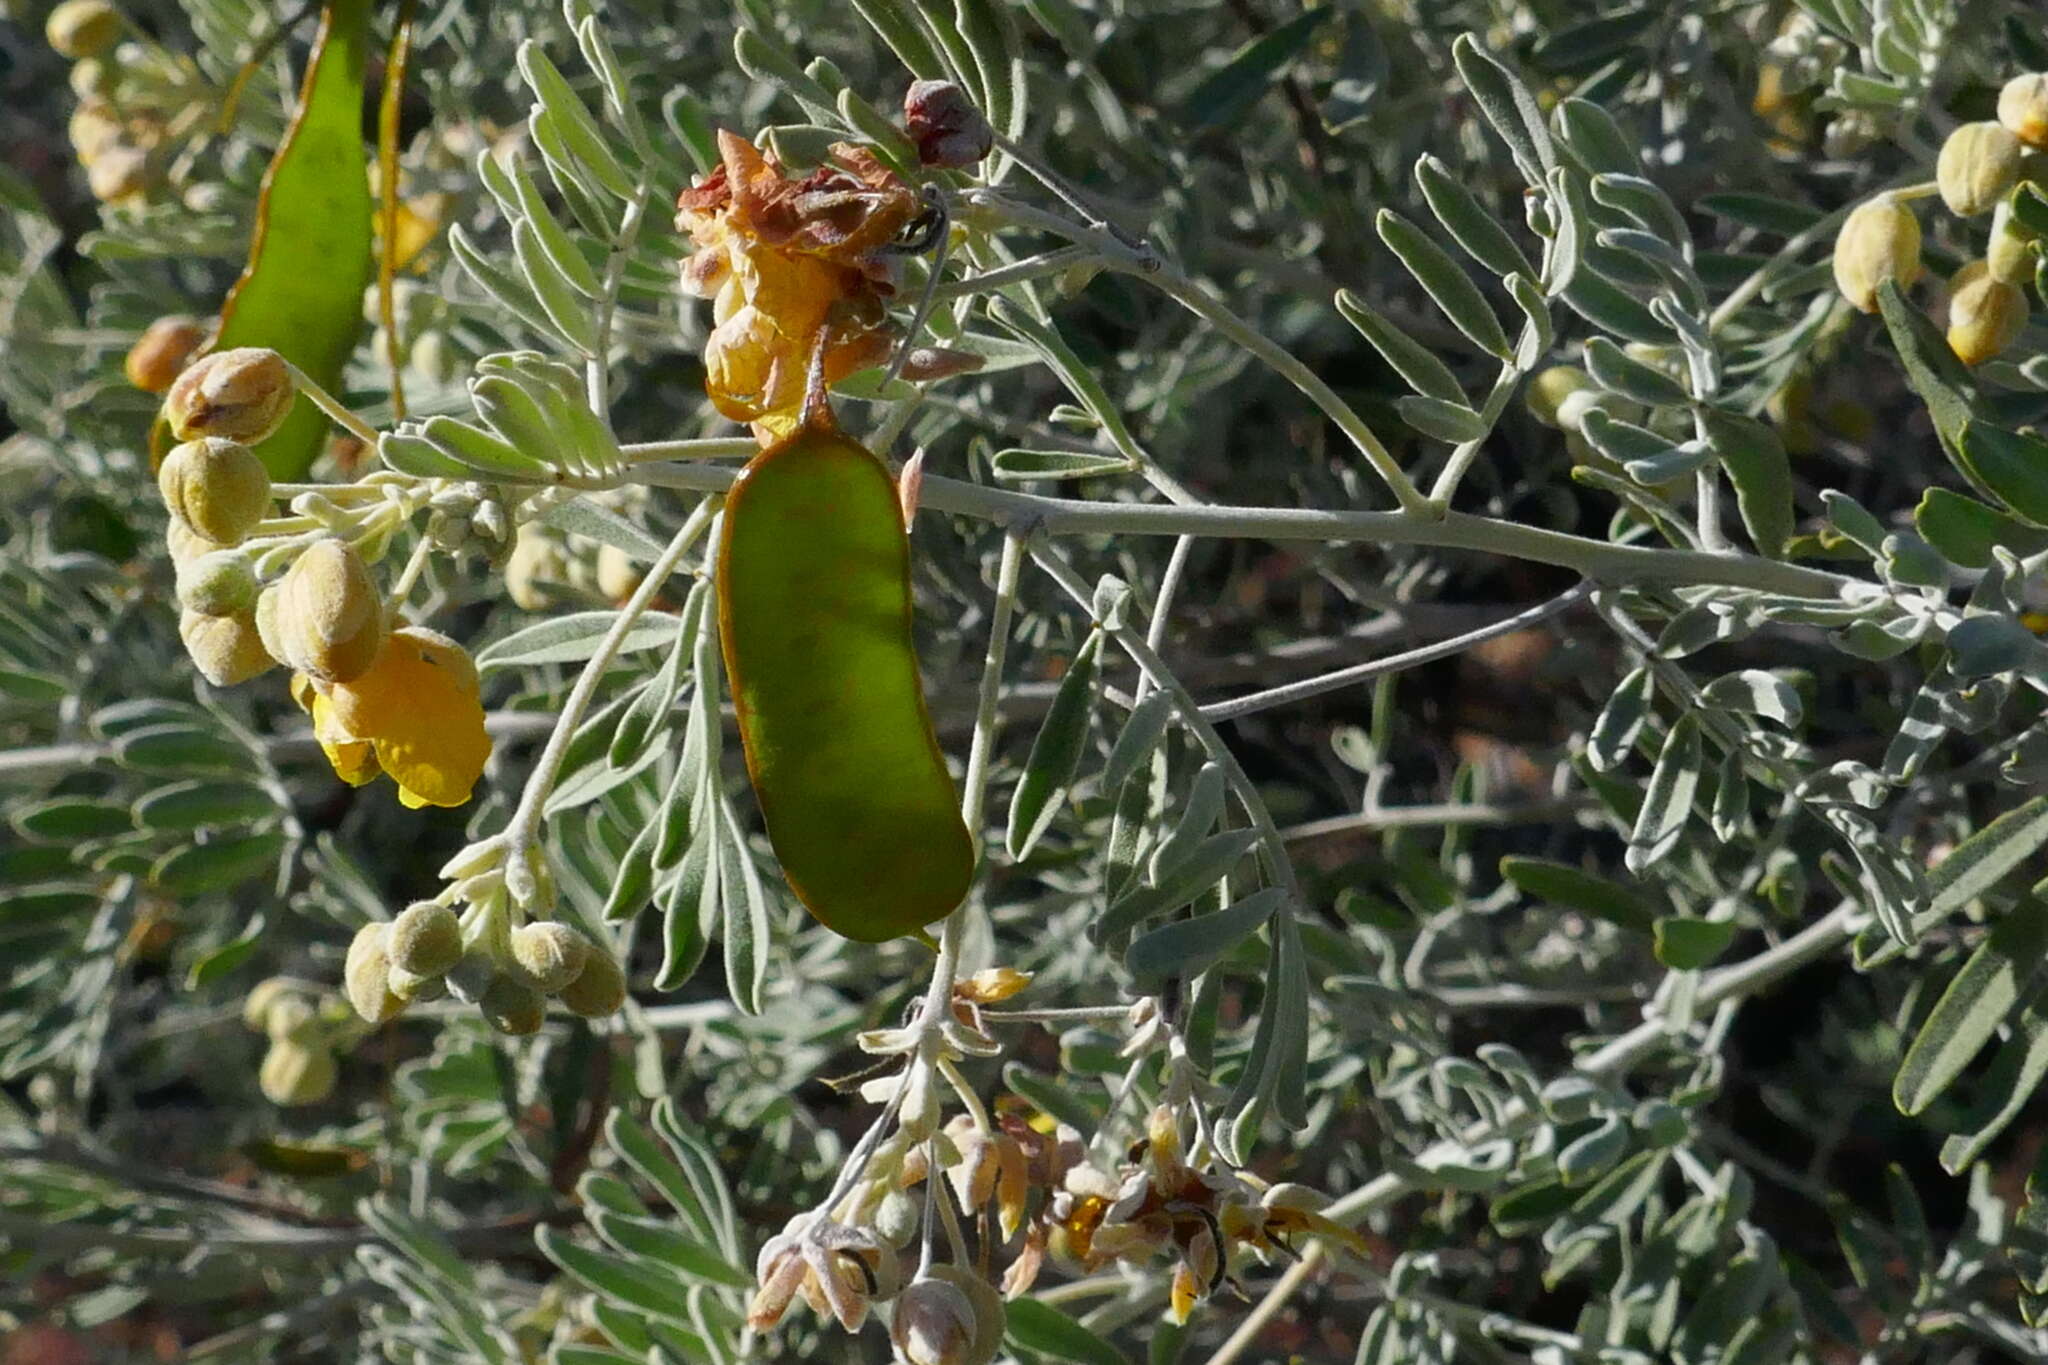 Image of Senna artemisioides subsp. sturtii